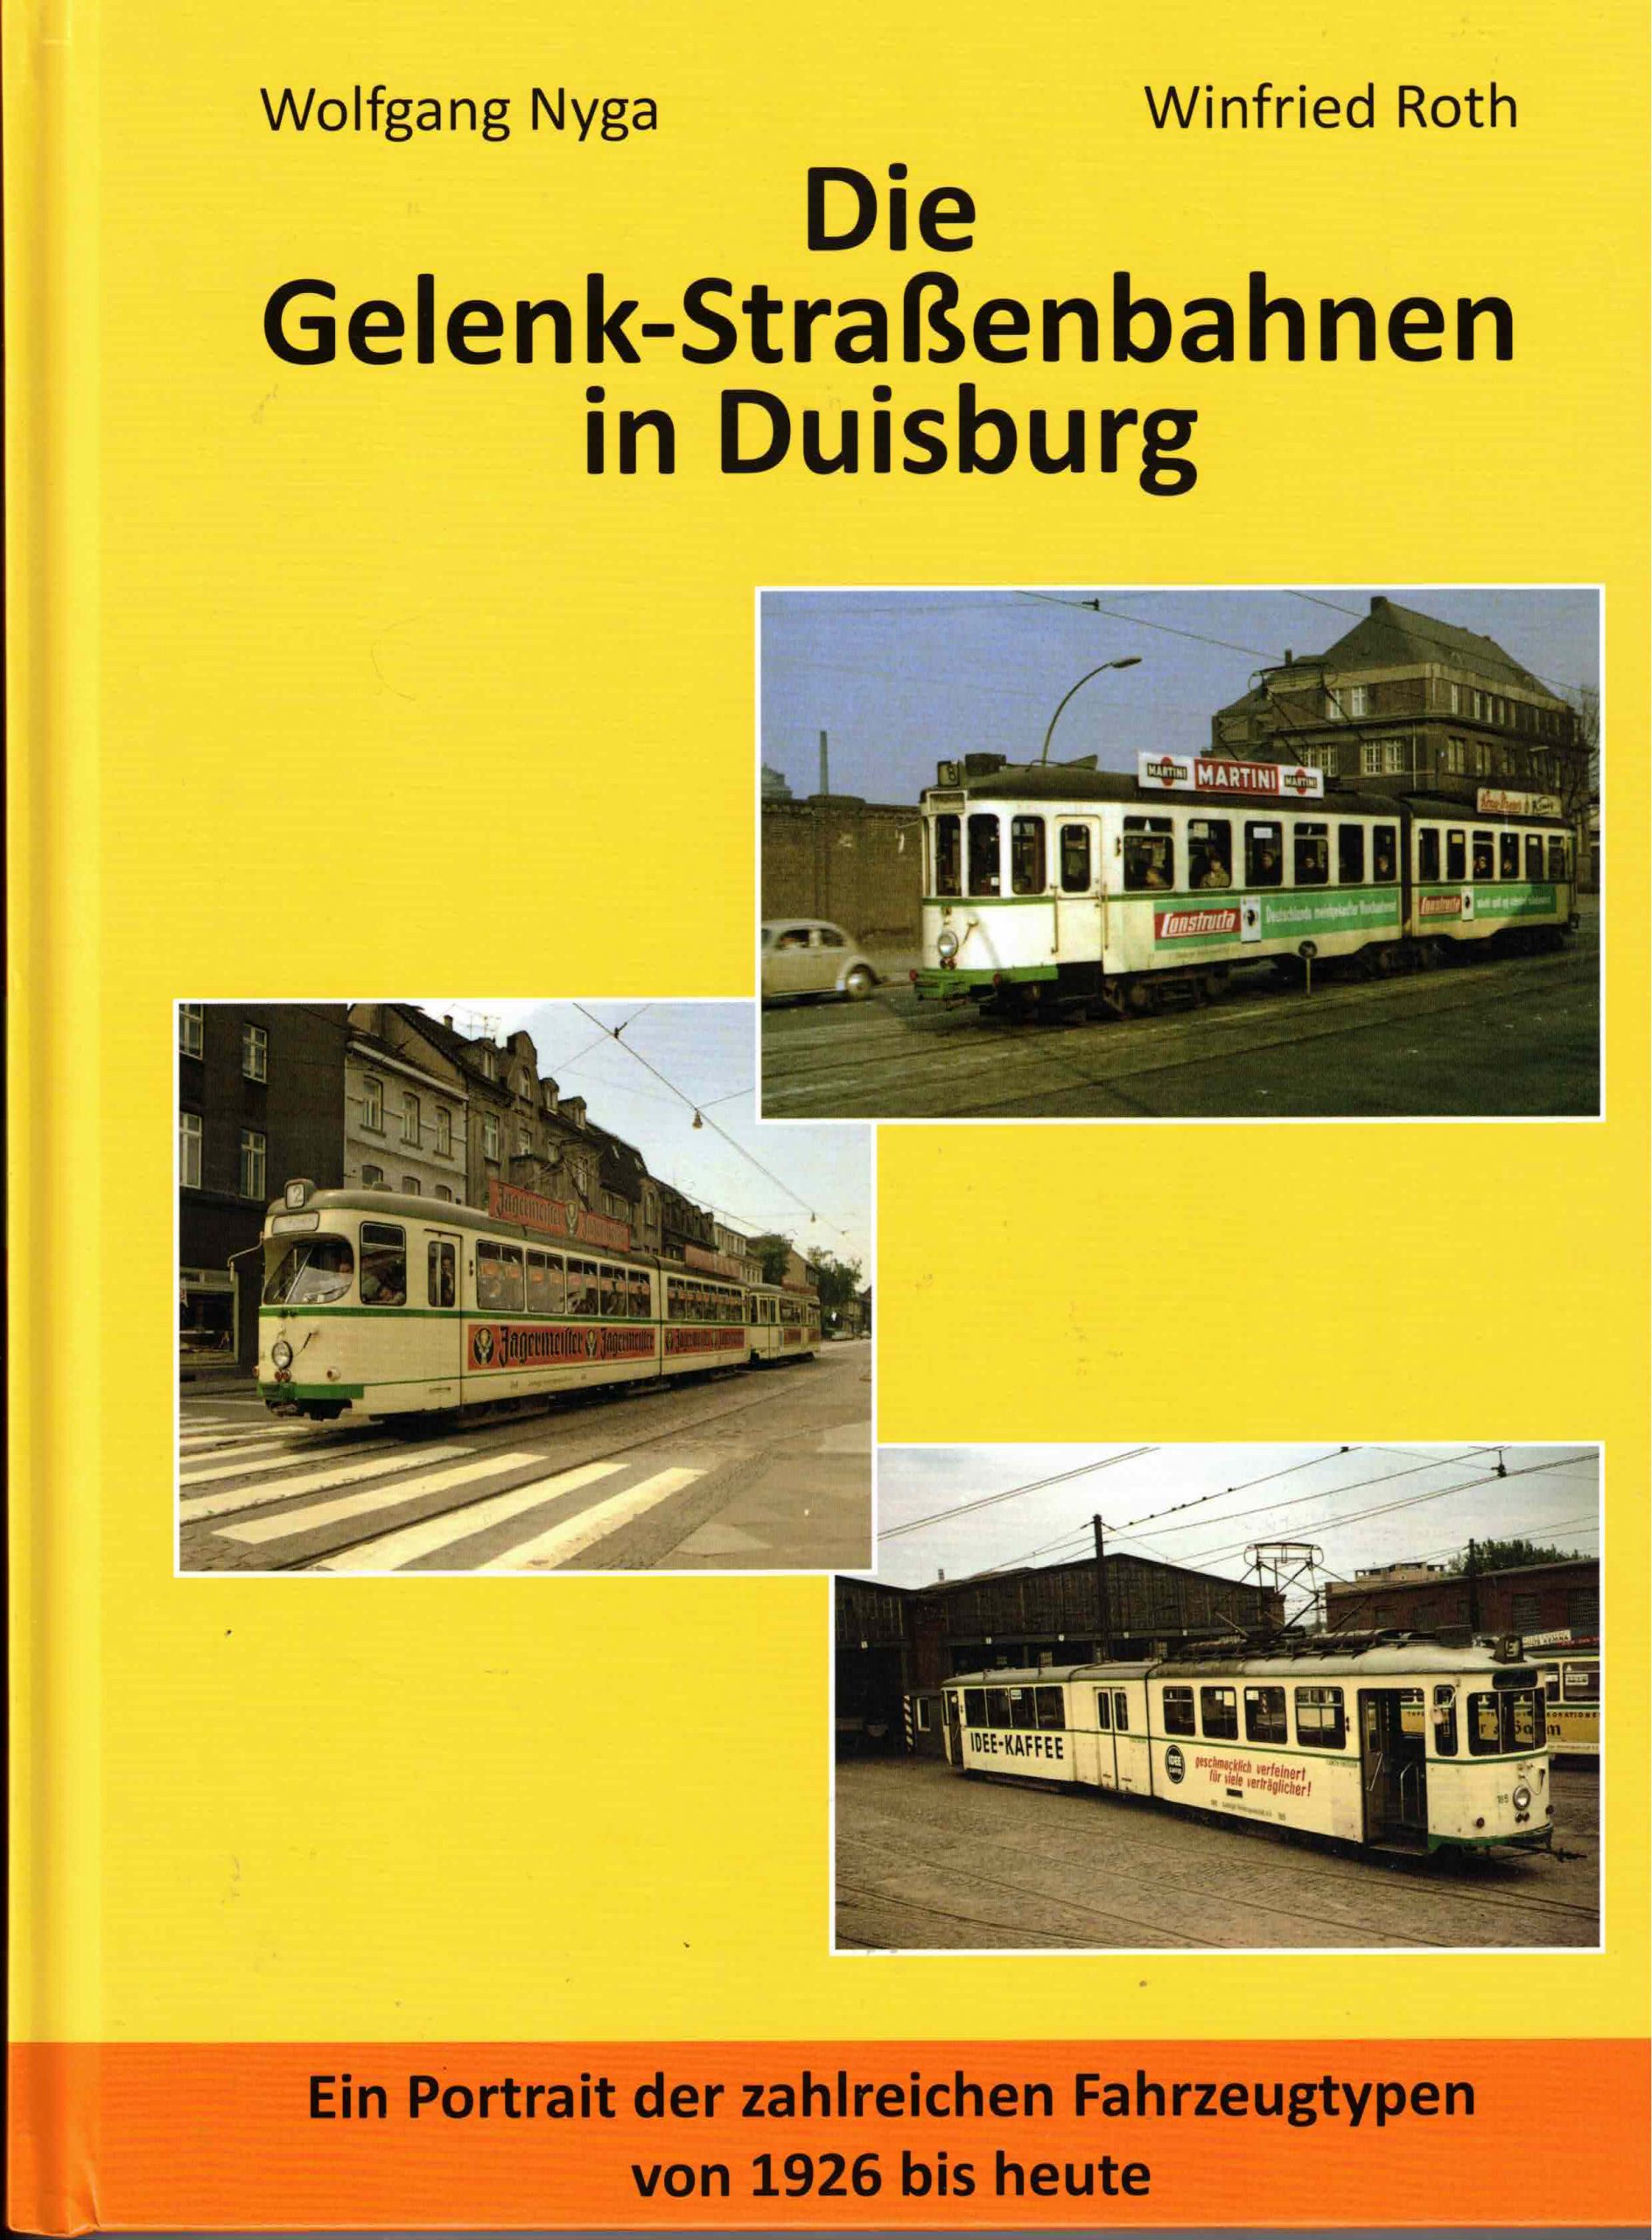 Featured image for “November 2021 – Die Gelenk-Straßenbahnen in Duisburg”